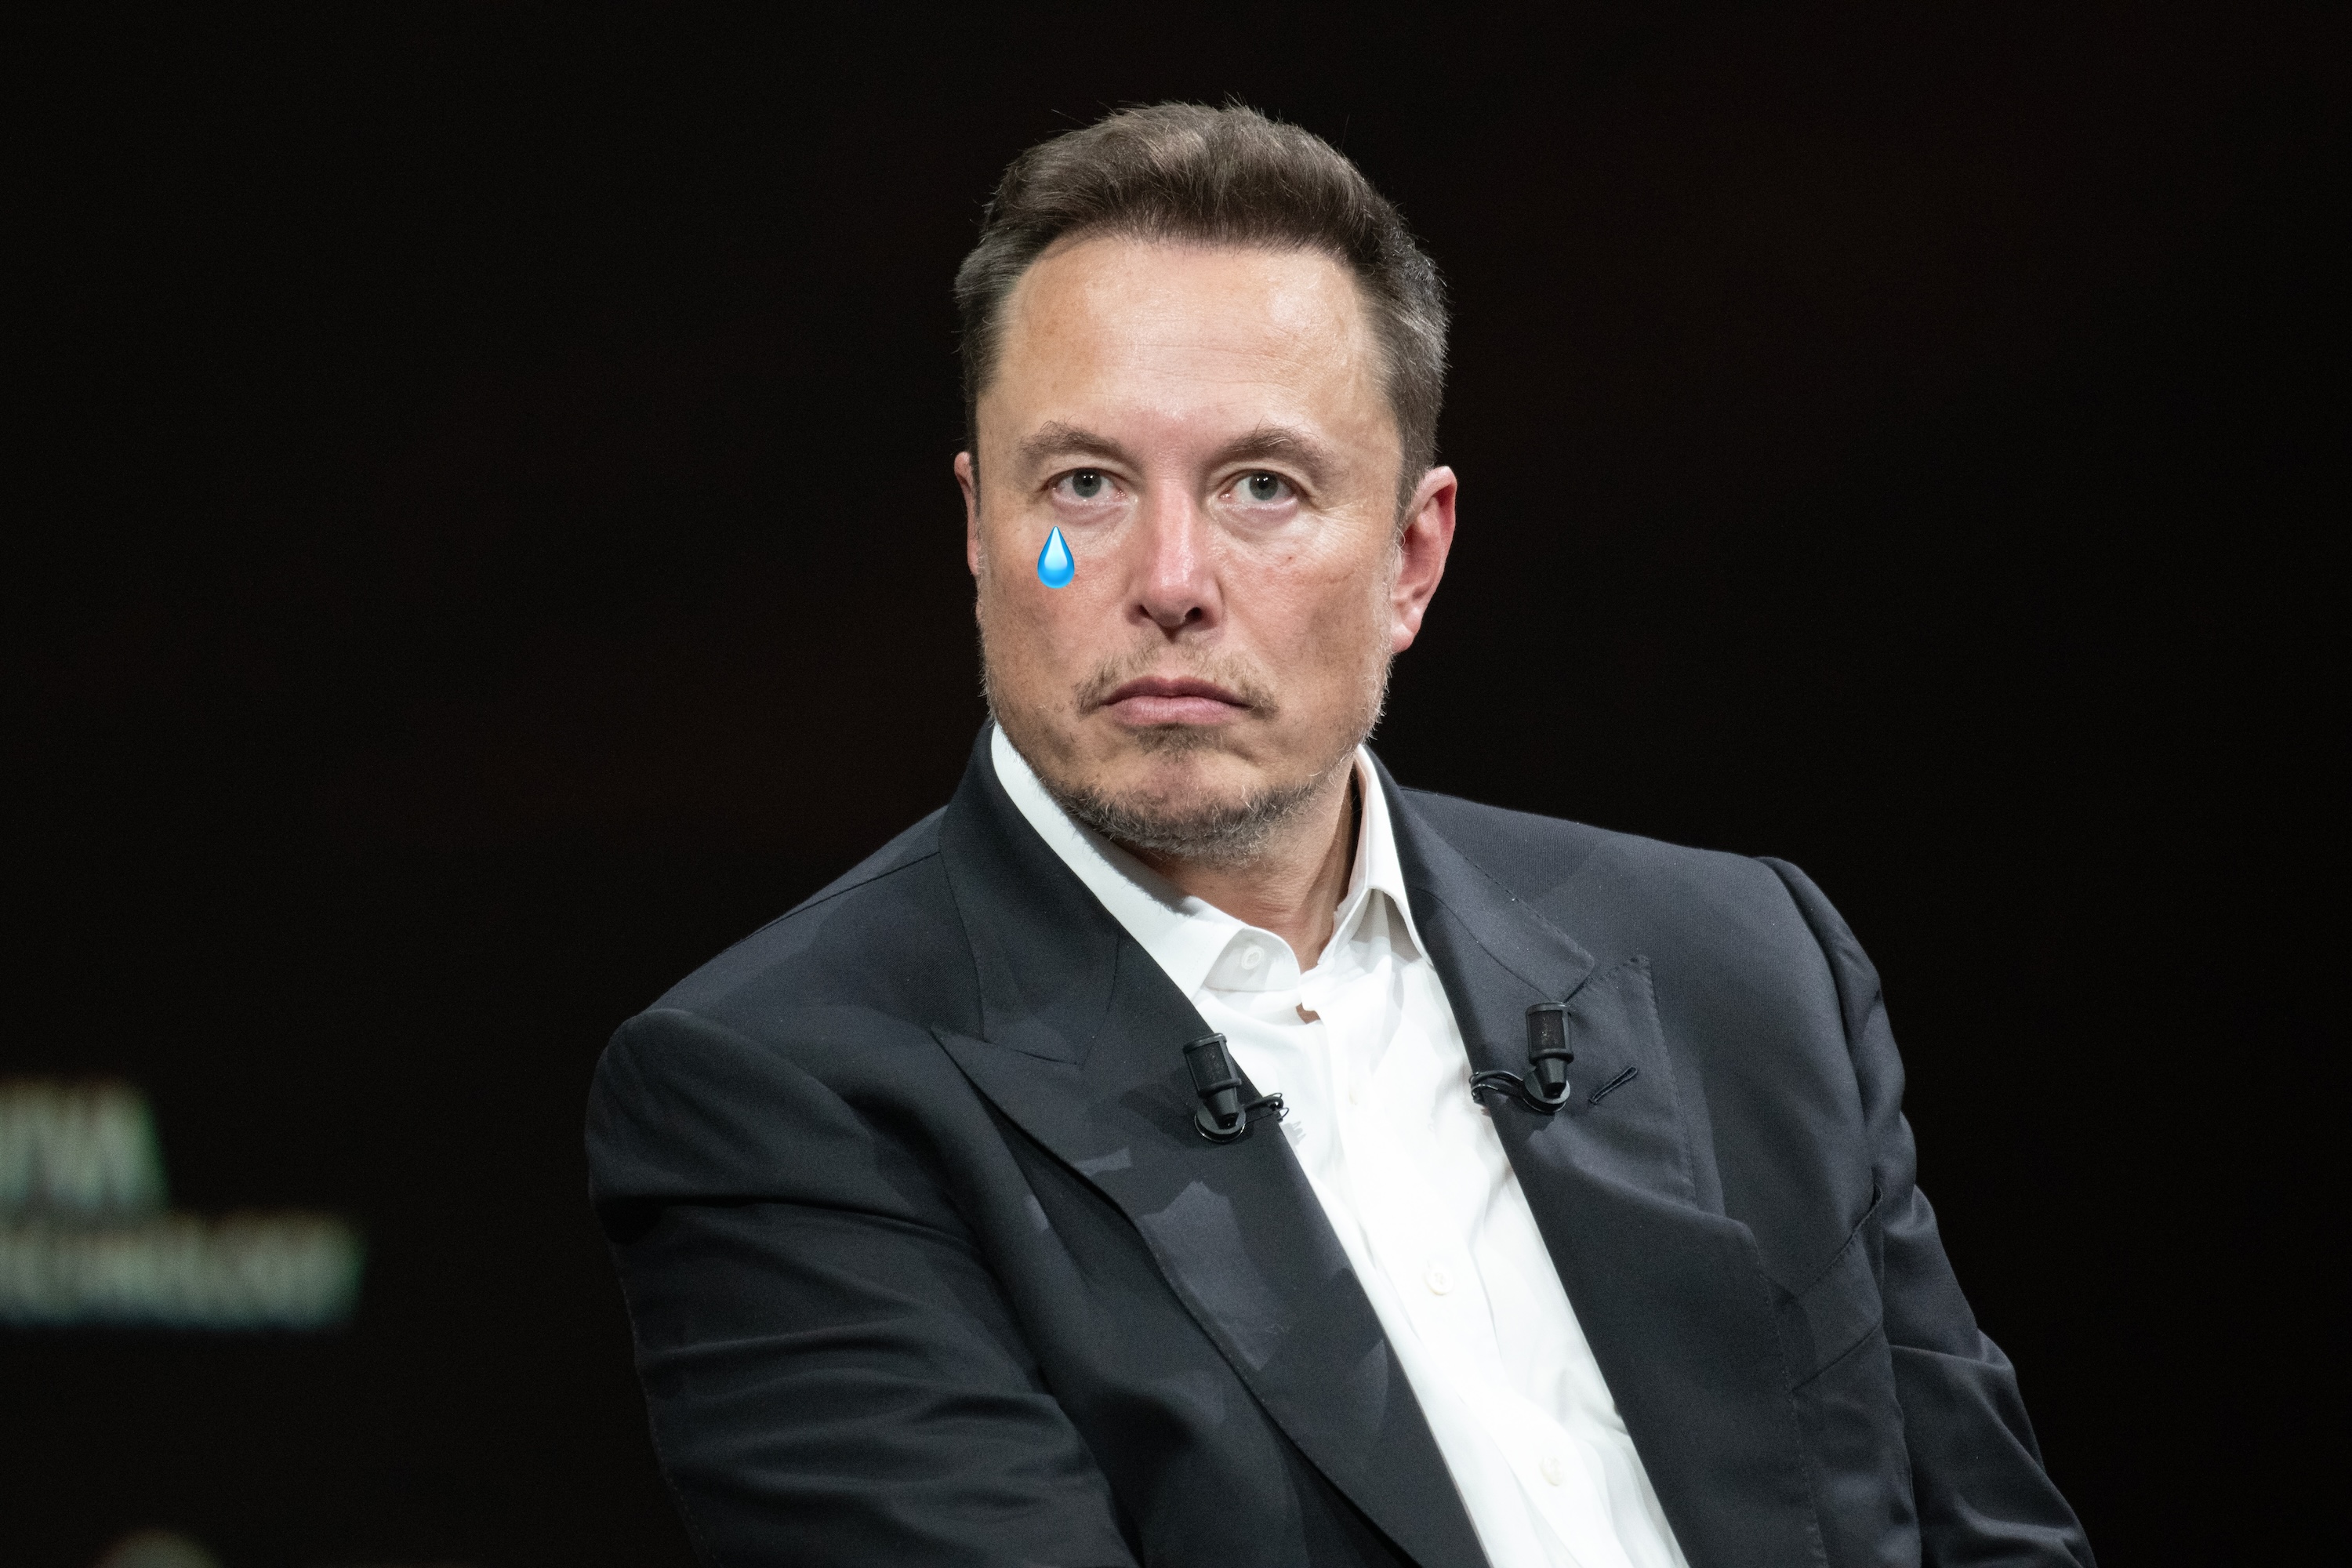 Rebondissement ! La trahison d'un ancien employé pourrait empêcher X.com de devenir l'app à tout faire rêvée par Elon Musk